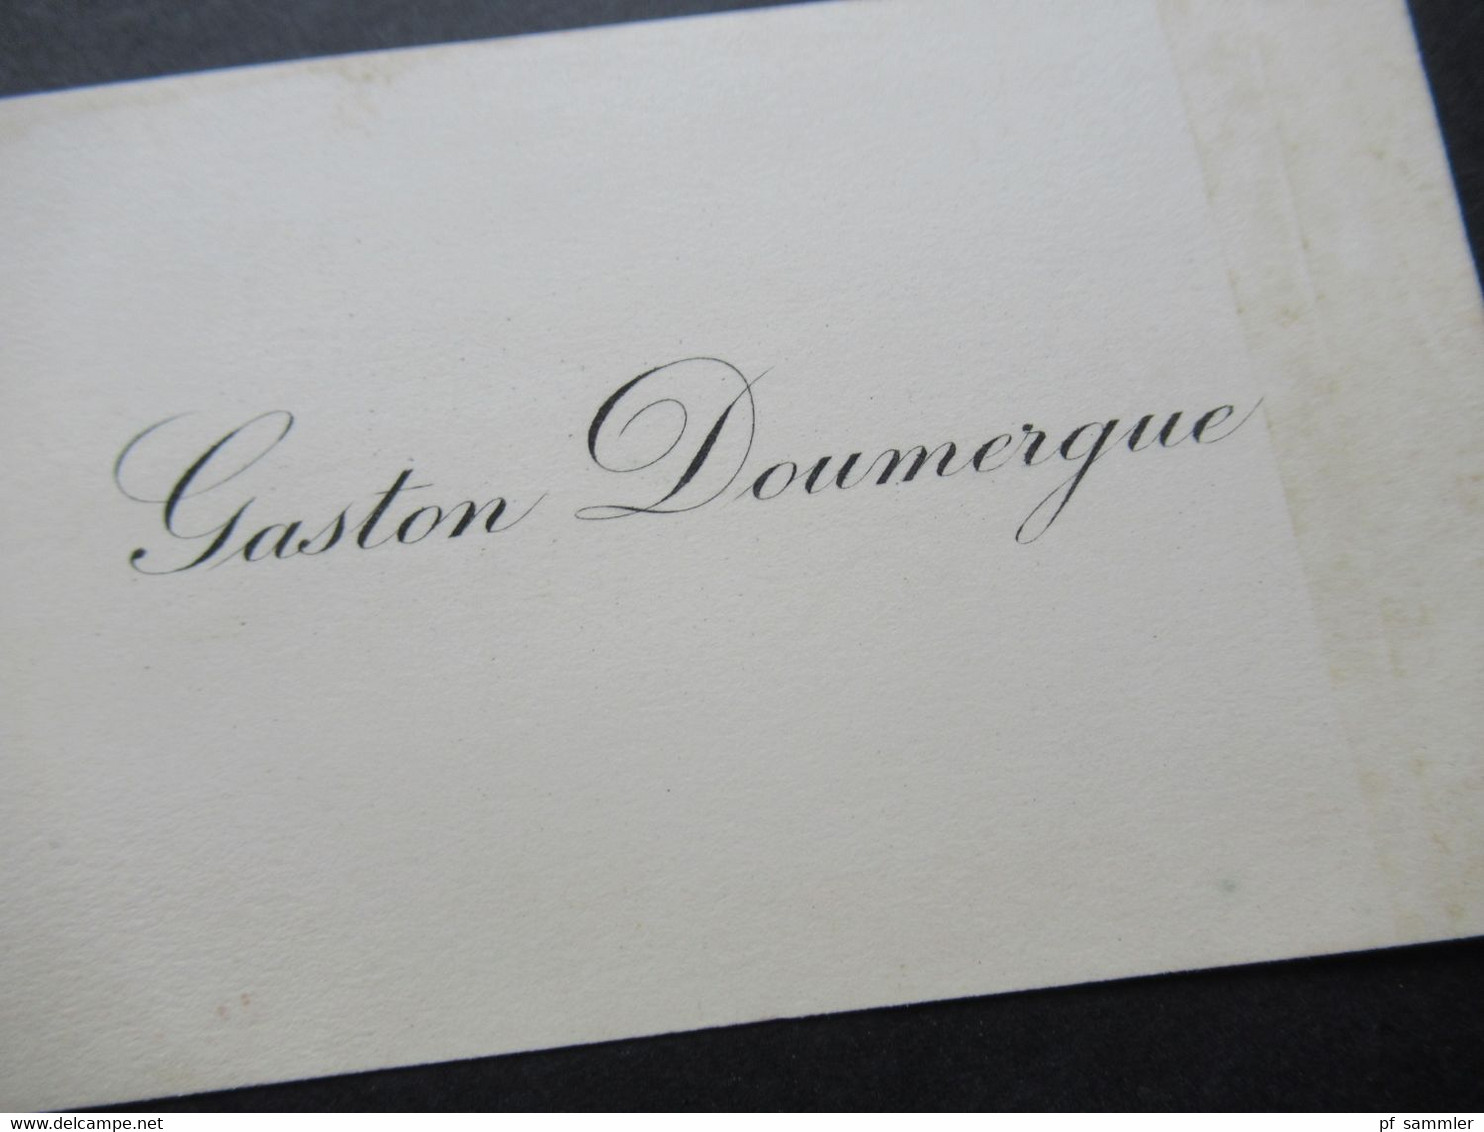 Frankreich Alte Originale Visitenkarte Gaston Doumergue Präsident Der Dritten Republik. - Cartes De Visite